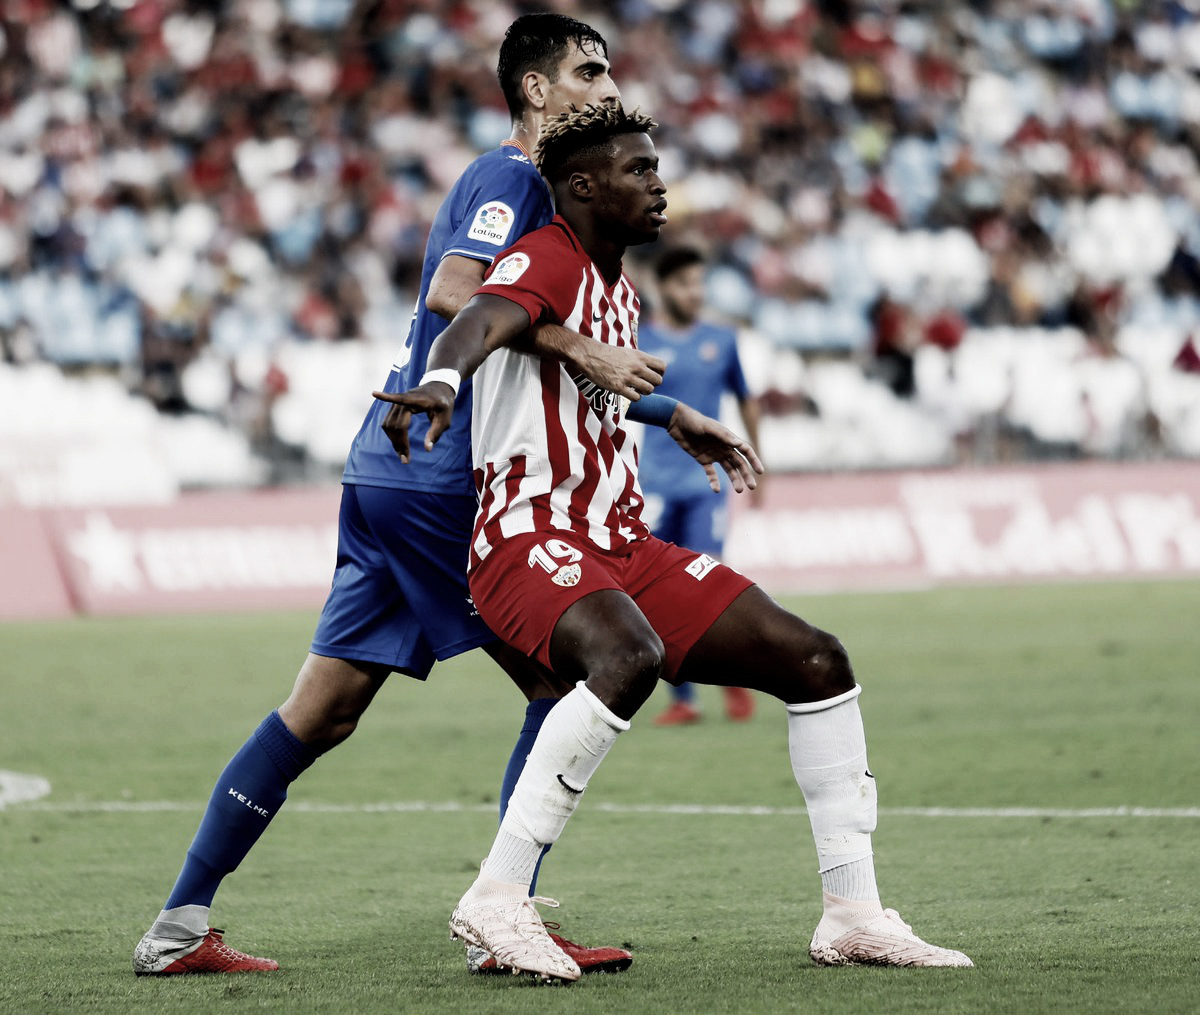 Resumen UD Almería vs CF Reus en Copa del Rey 2018 (3-1)